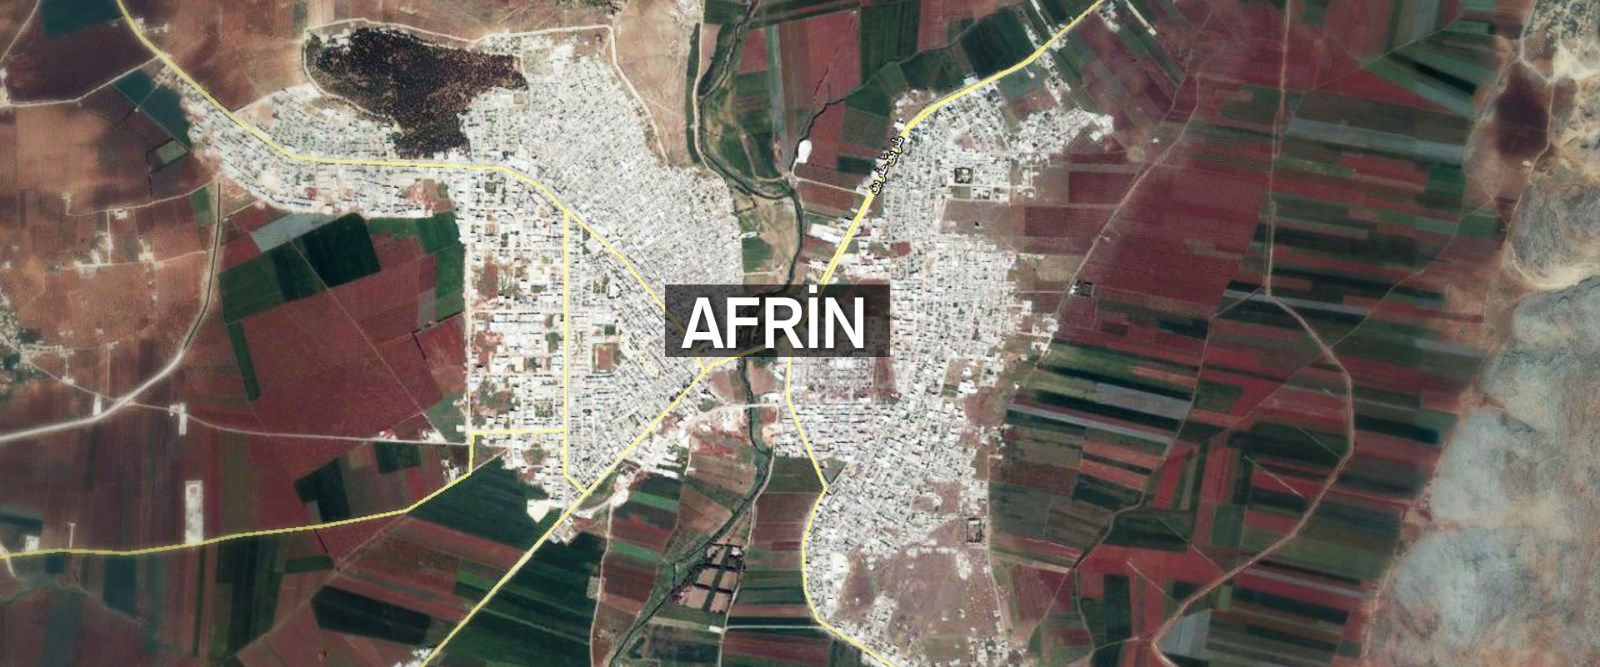 Afrin harekatında çok kritik safha (Bundan sonra ne olacak?)